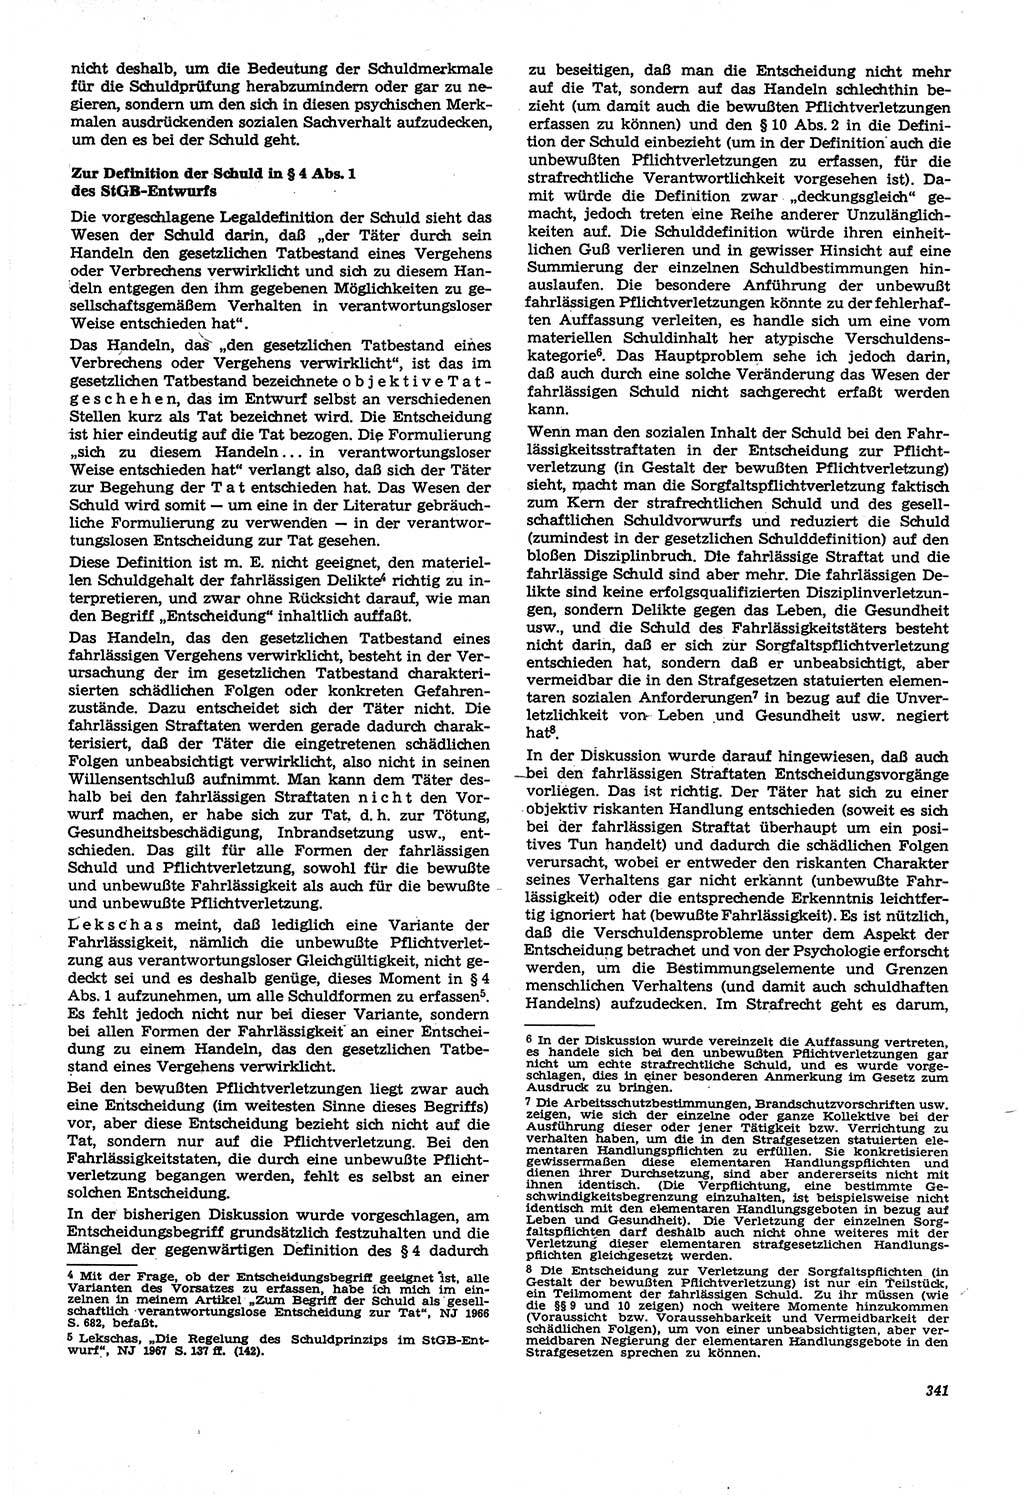 Neue Justiz (NJ), Zeitschrift für Recht und Rechtswissenschaft [Deutsche Demokratische Republik (DDR)], 21. Jahrgang 1967, Seite 341 (NJ DDR 1967, S. 341)